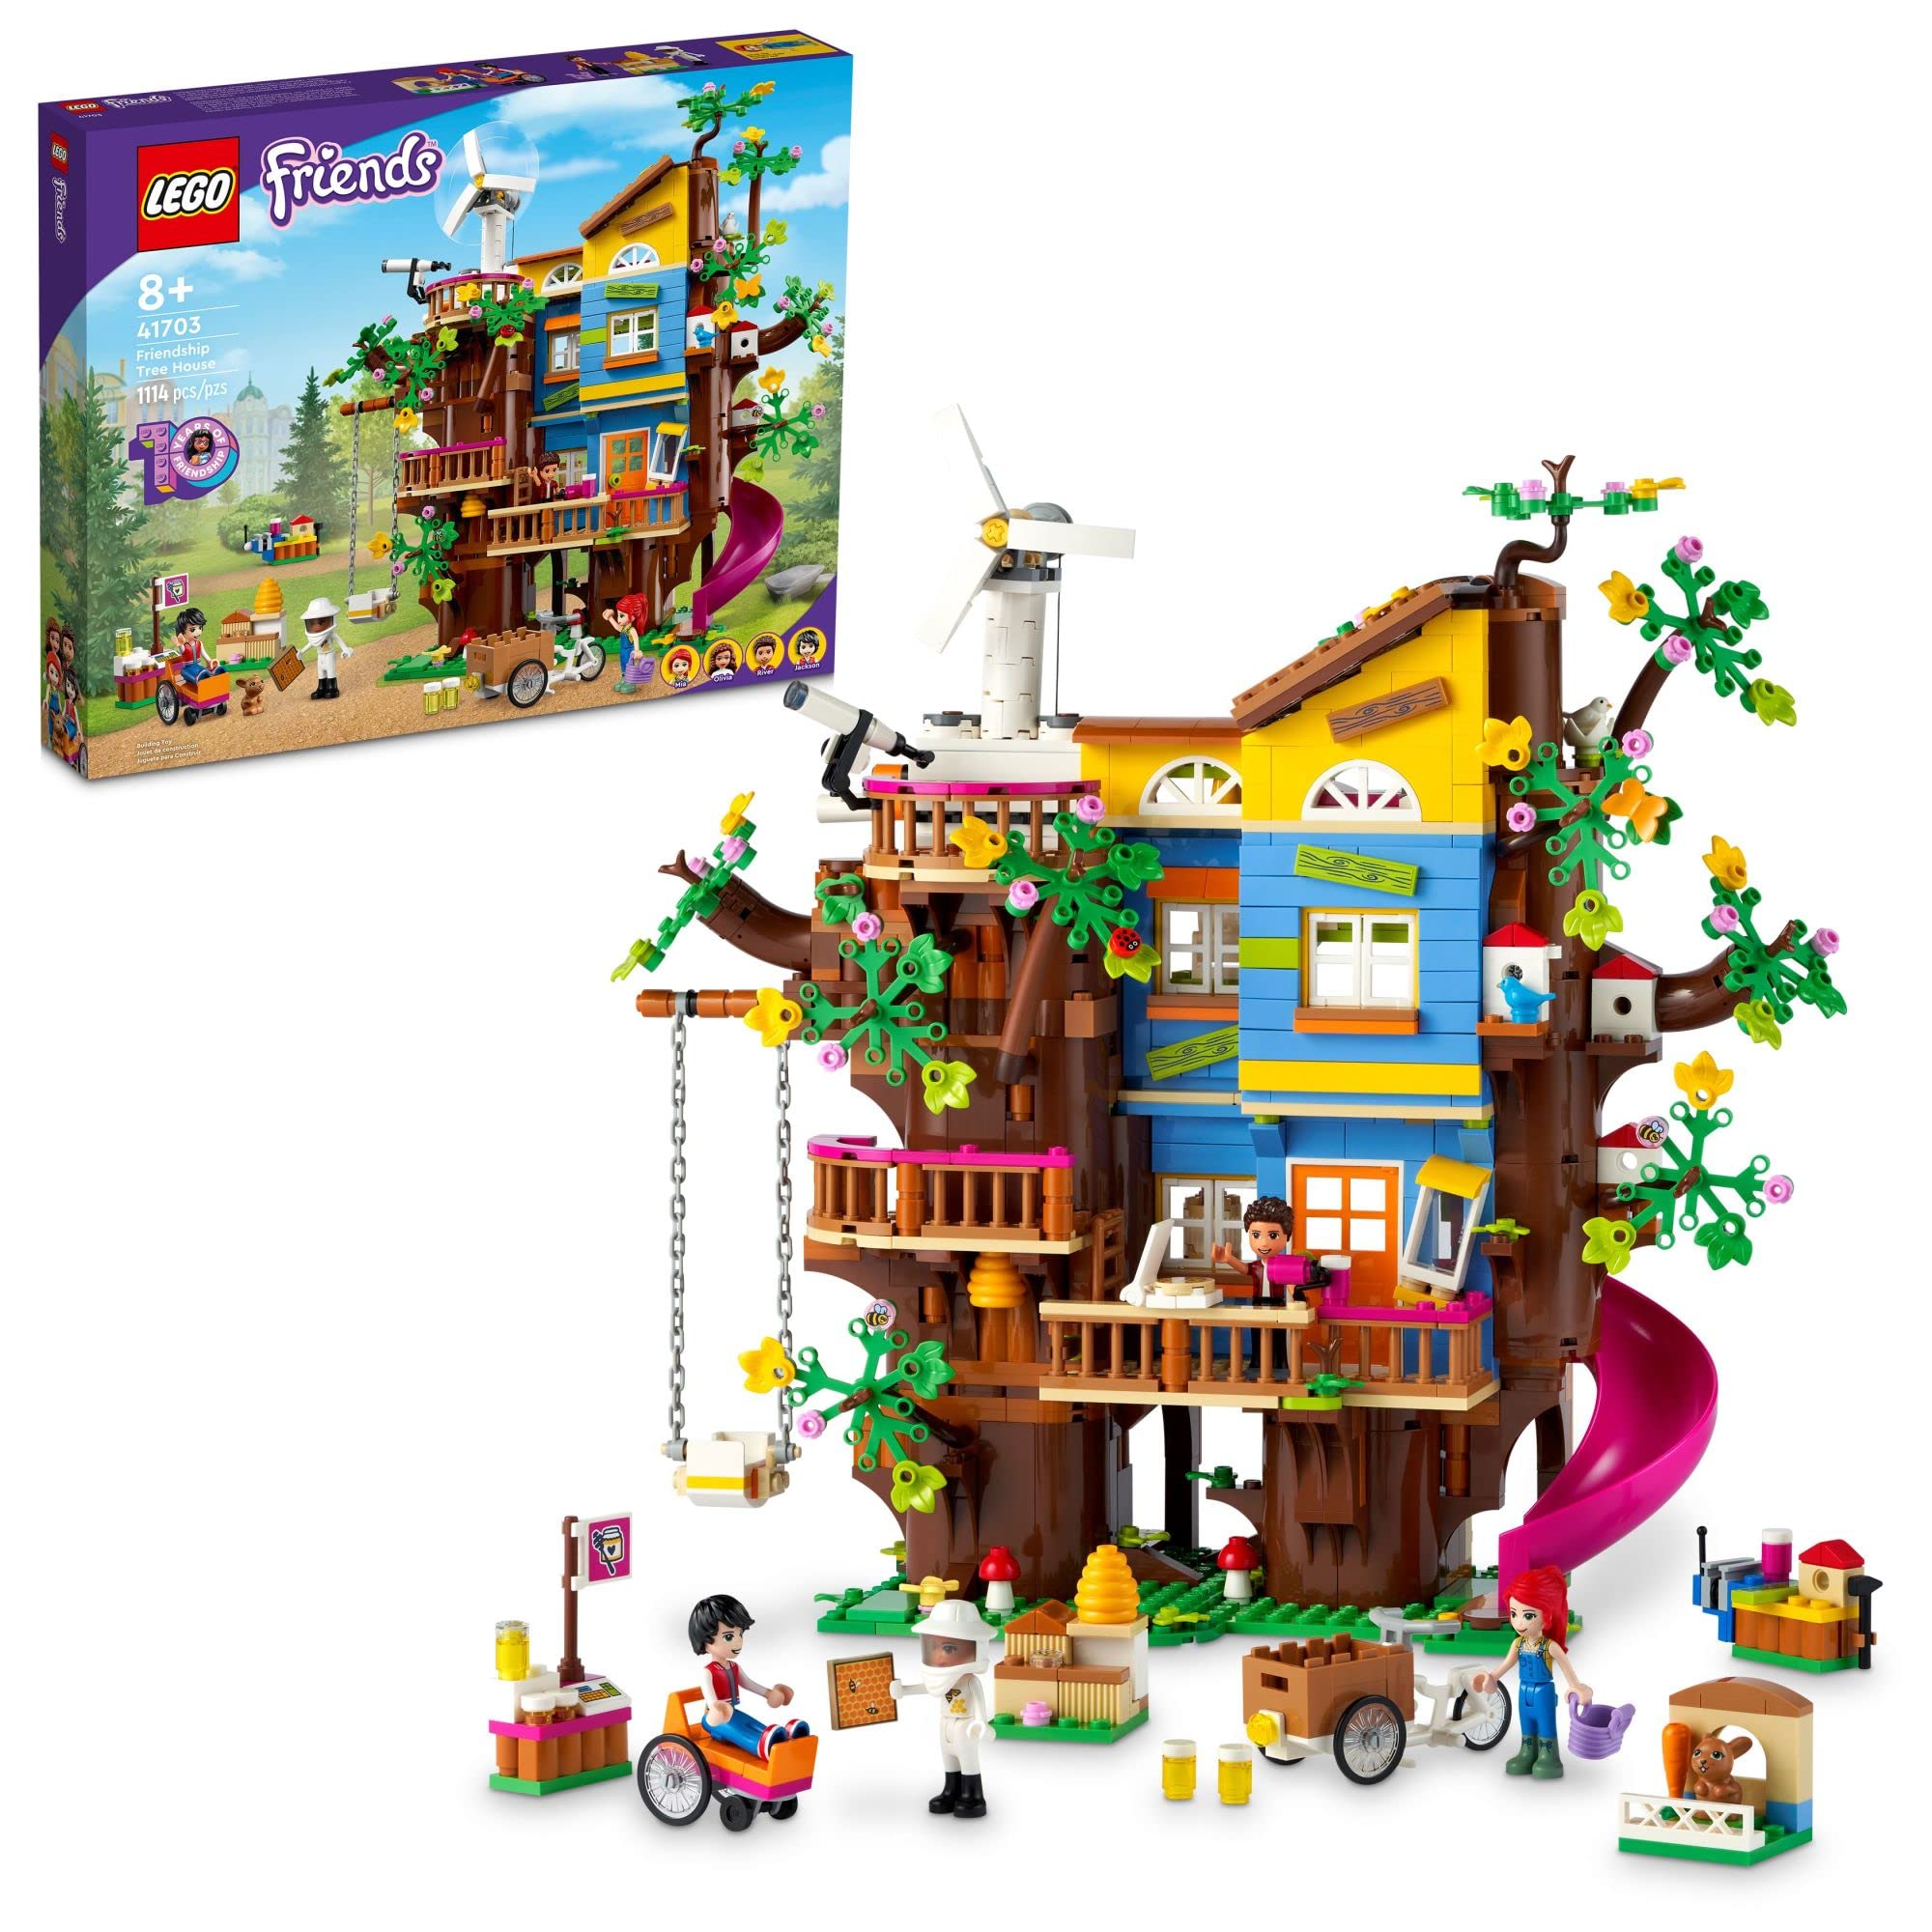  LEGO Kit de construcción Friends Friendship Tree House 41703; Divertida idea de regalo de cumpleaños para niños mayores de 8 años que se preocupan por el medio ambiente y disfrutan de juguetes...